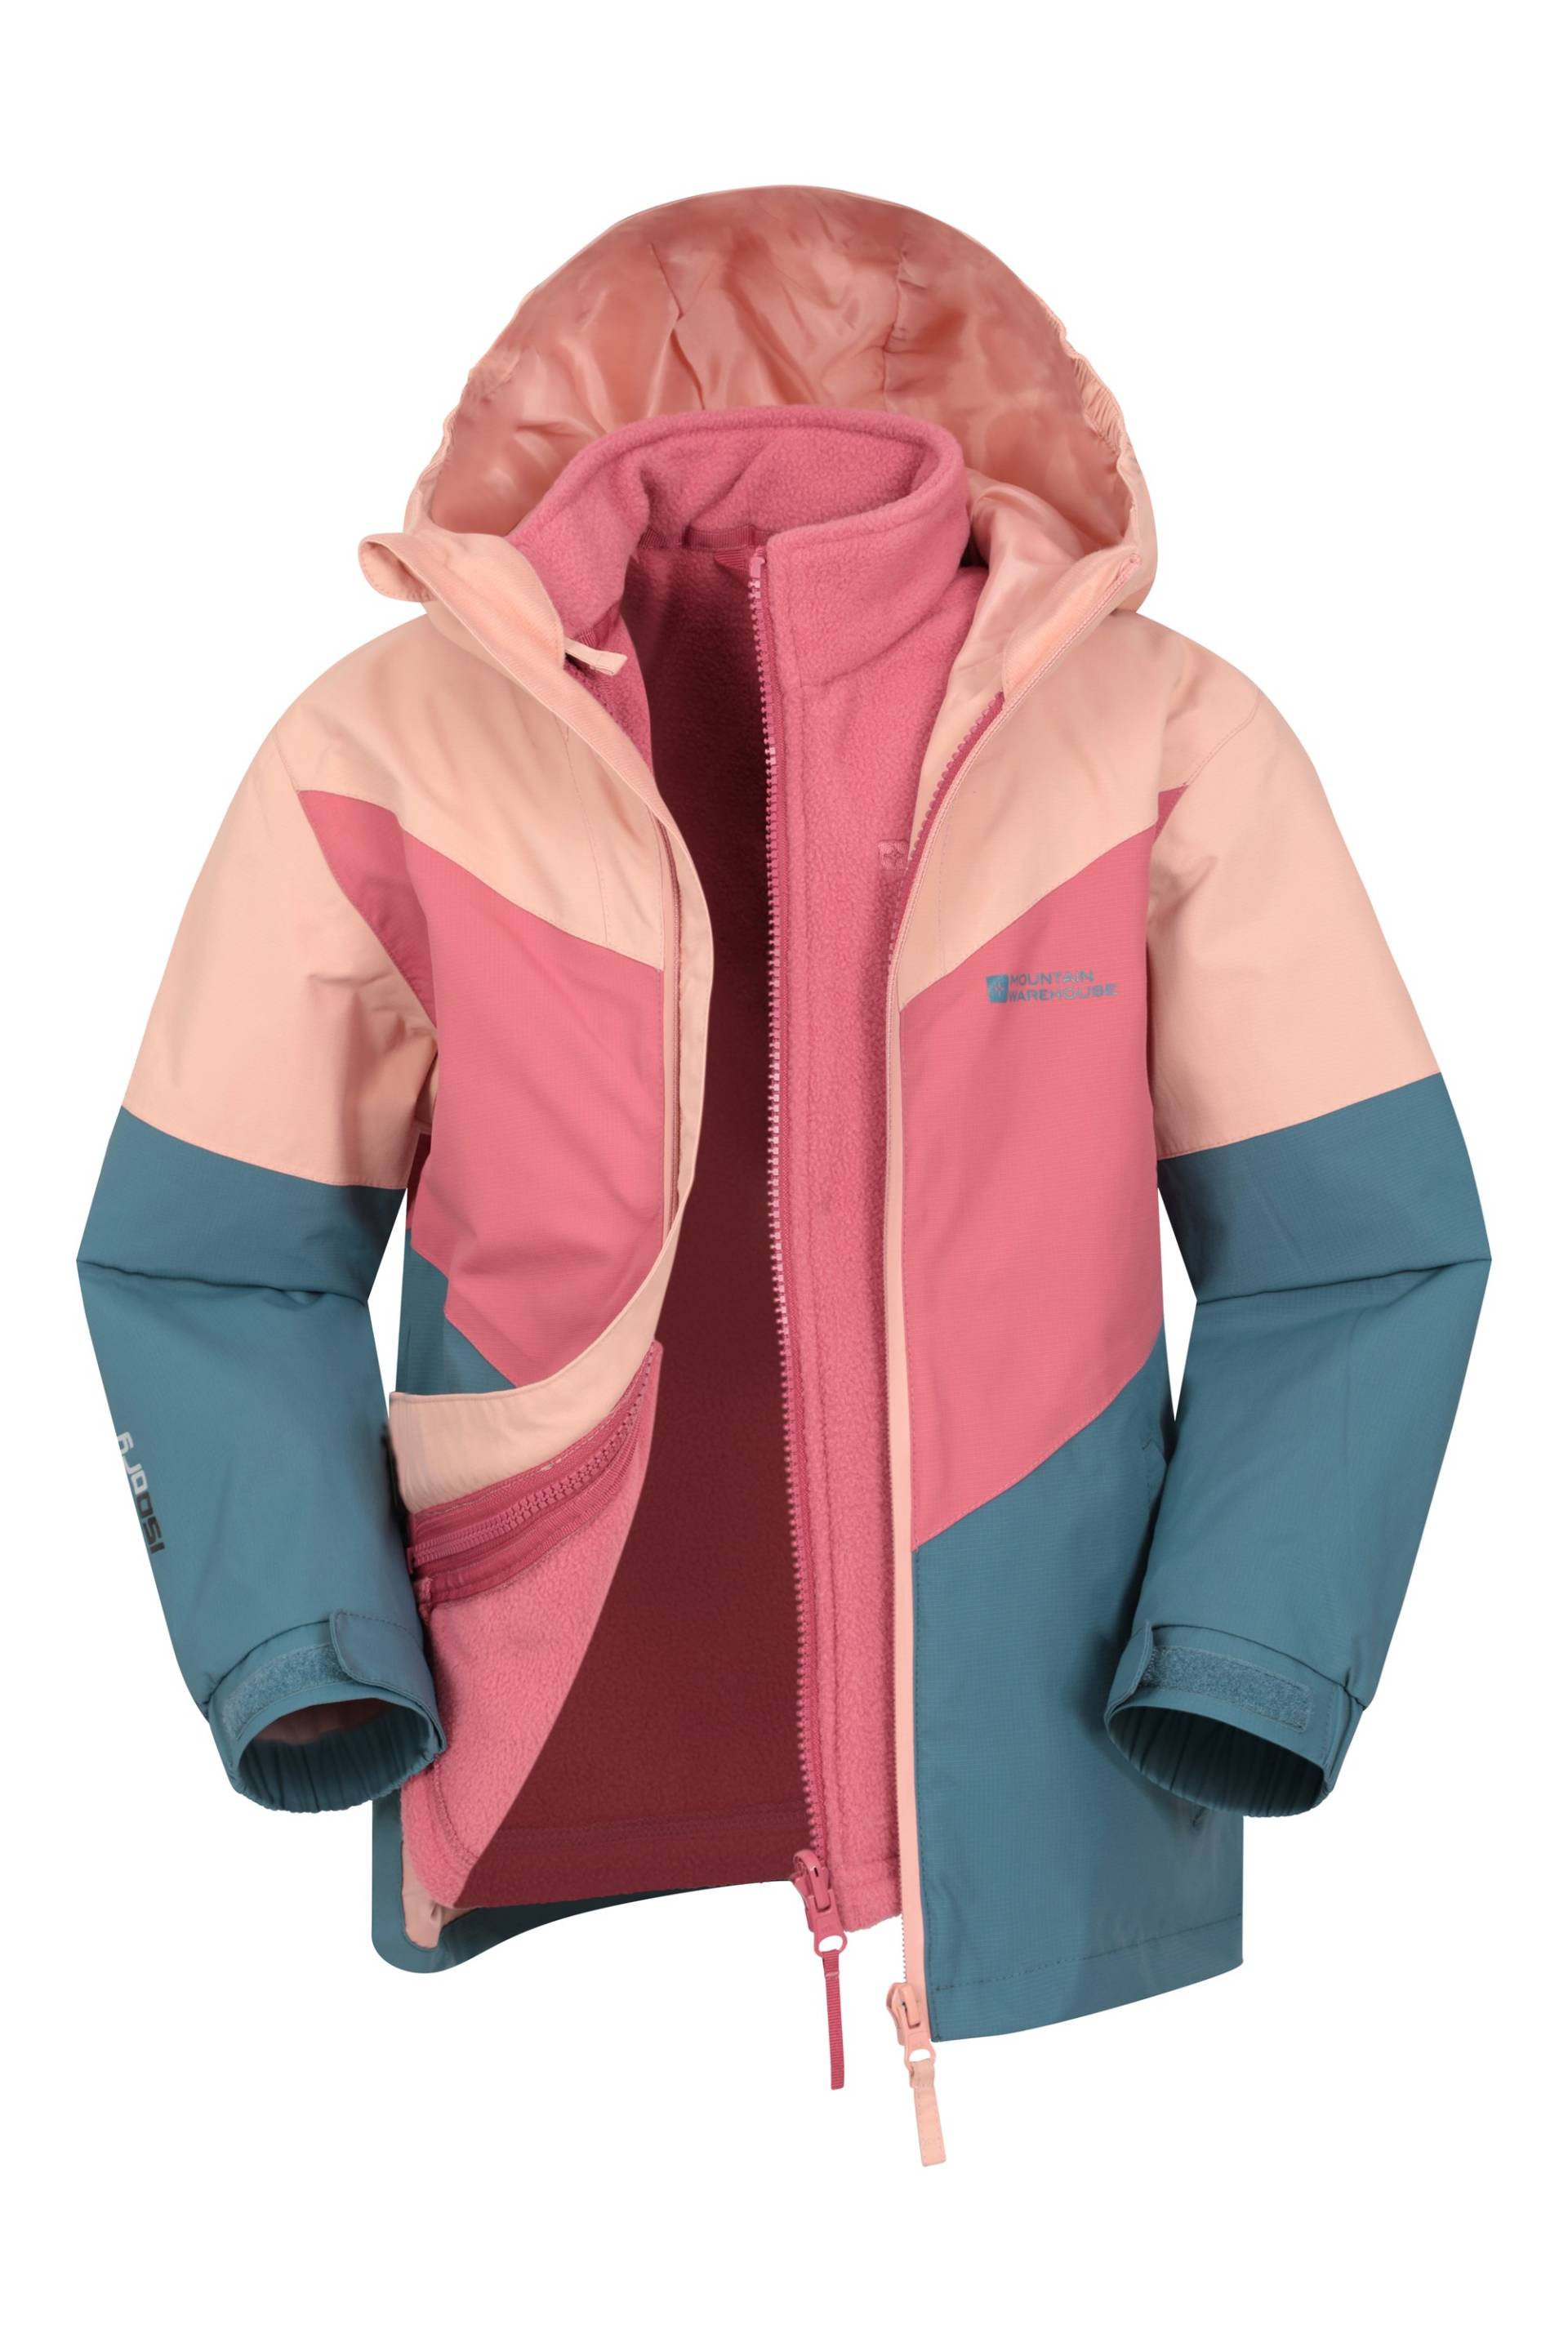 Lightning II wasserdichte 3-in-1-Jacke für Kinder - Dunkel-Pink von Mountain Warehouse